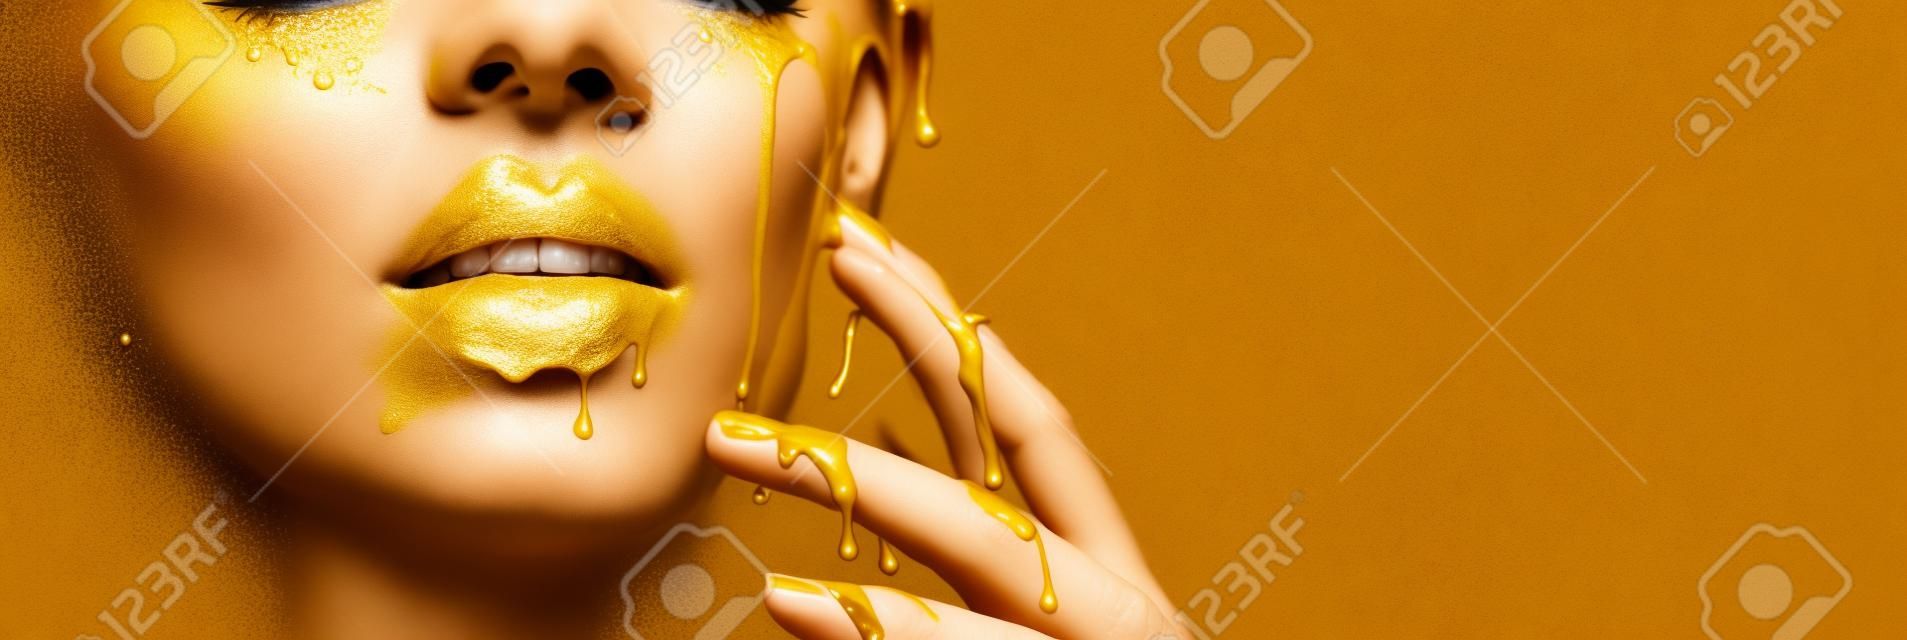 Des taches de peinture dorée s'égouttent des lèvres du visage et de la main, des gouttes de liquide doré sur la bouche de la belle fille modèle, un maquillage abstrait créatif. Visage de femme de beauté